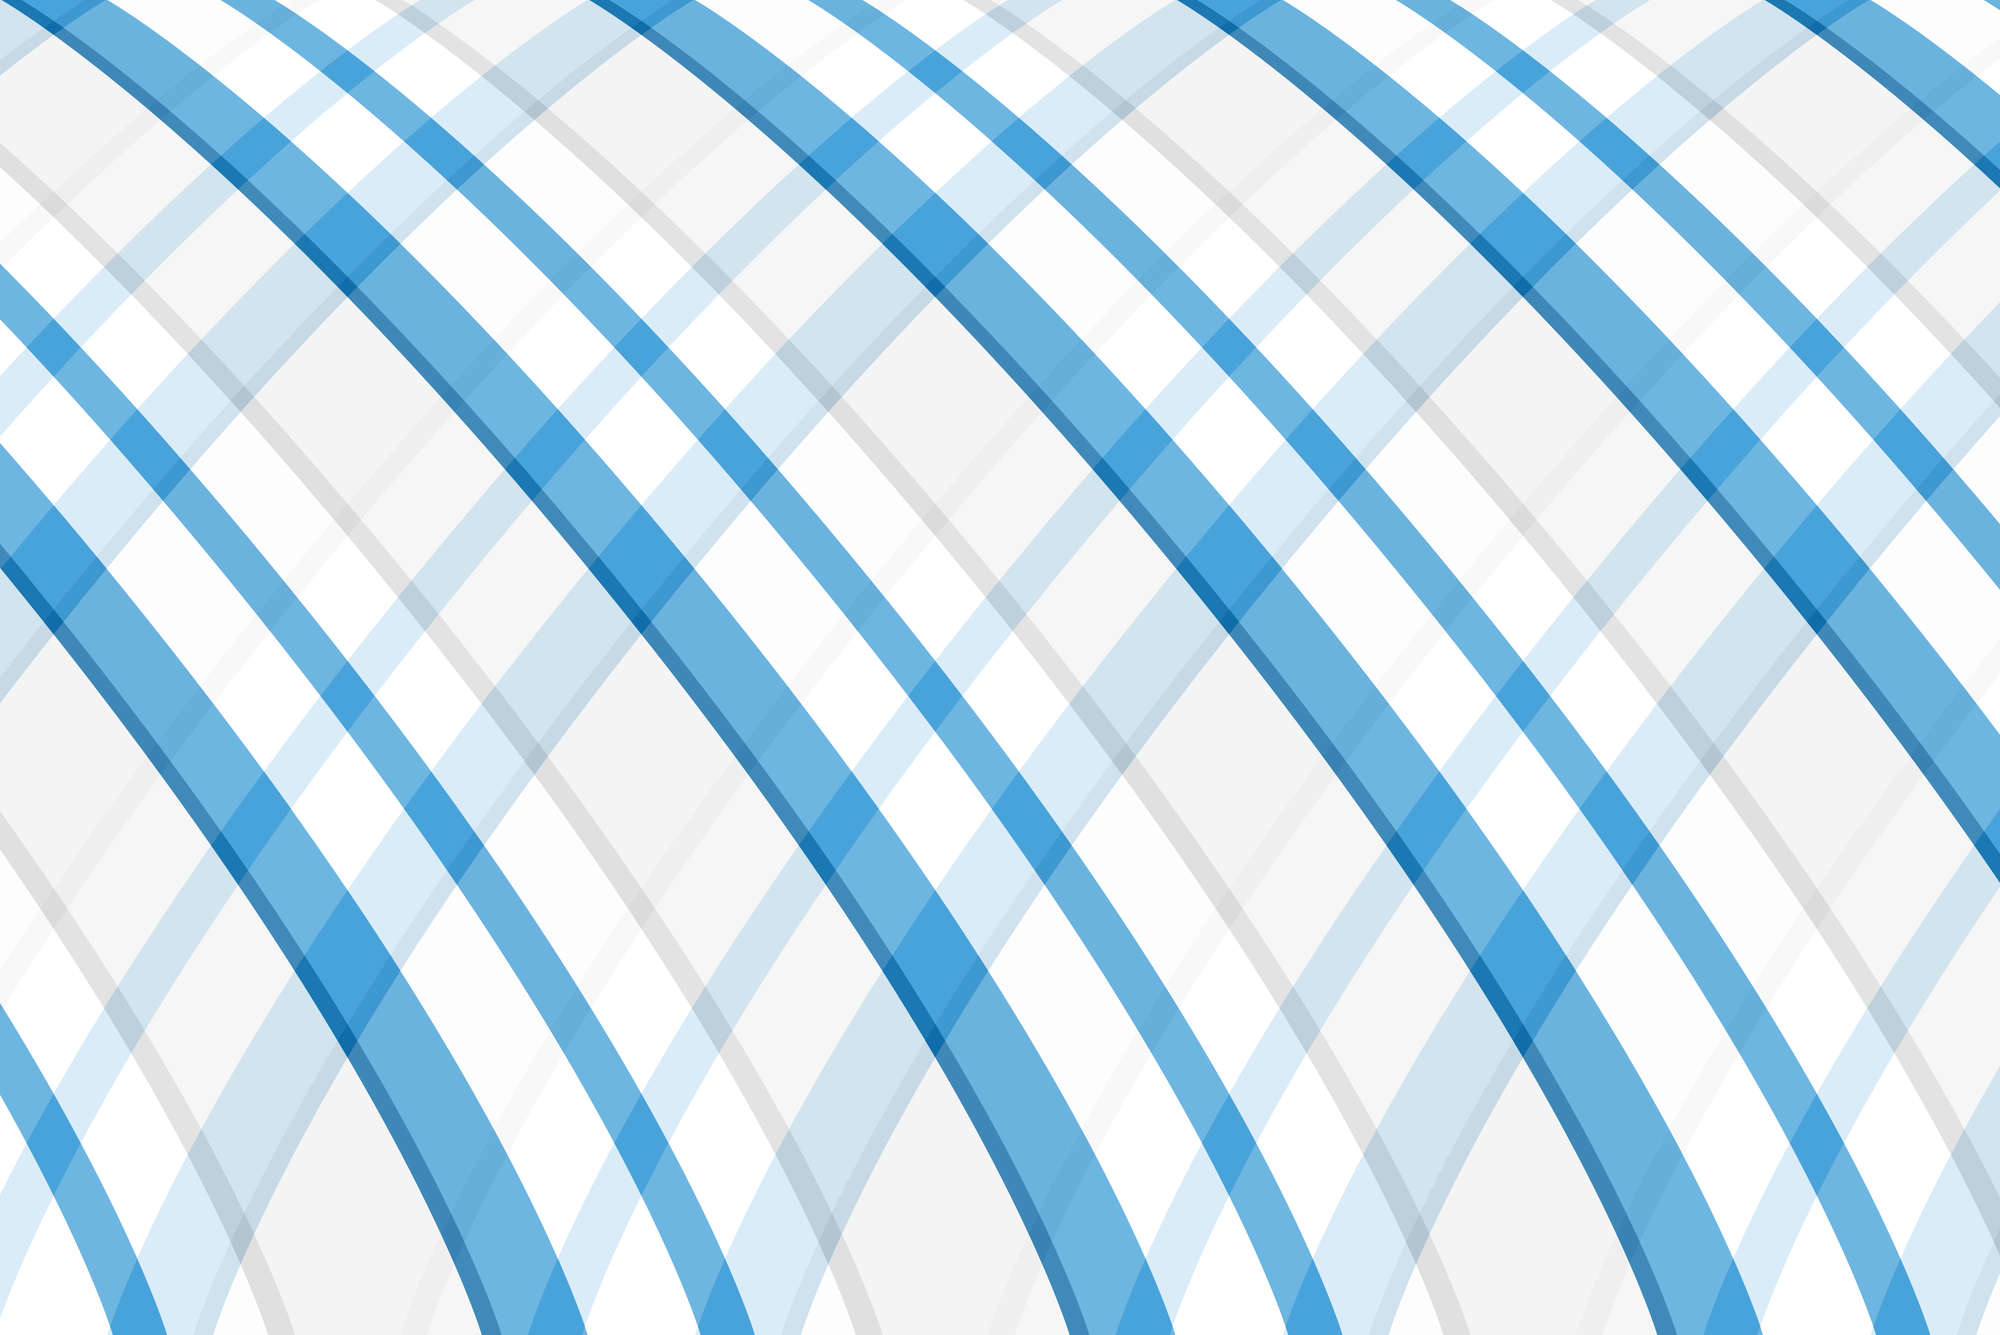             Designbehang met ronde strepen blauw op parelmoer glad vlies
        